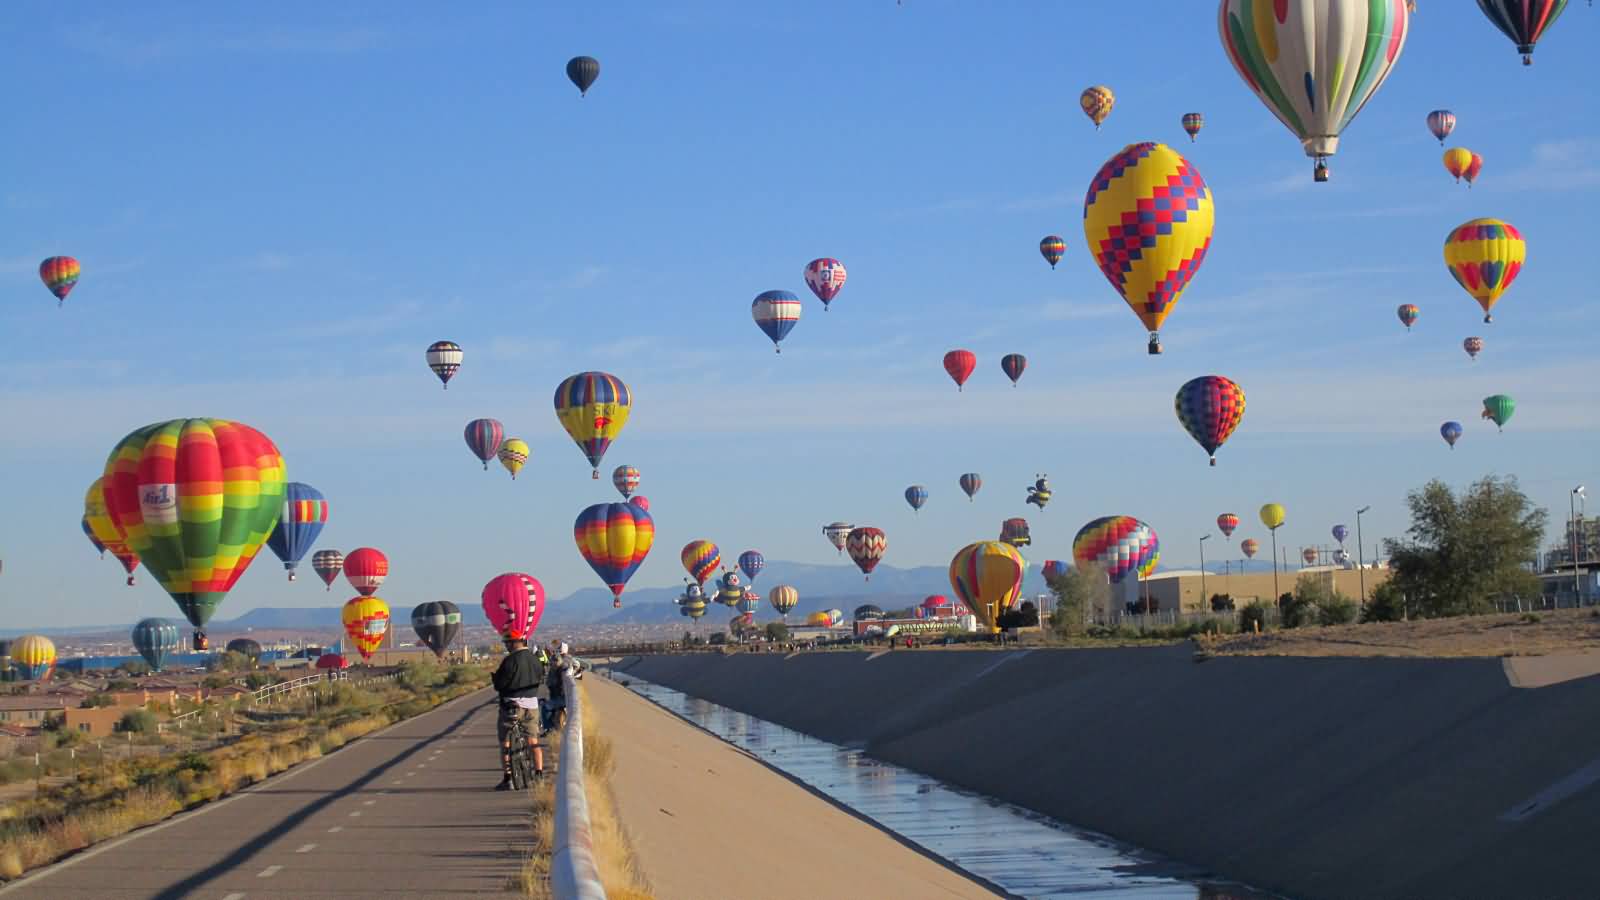 Beautiful Air Balloons At The Albuquerque Balloon Festival